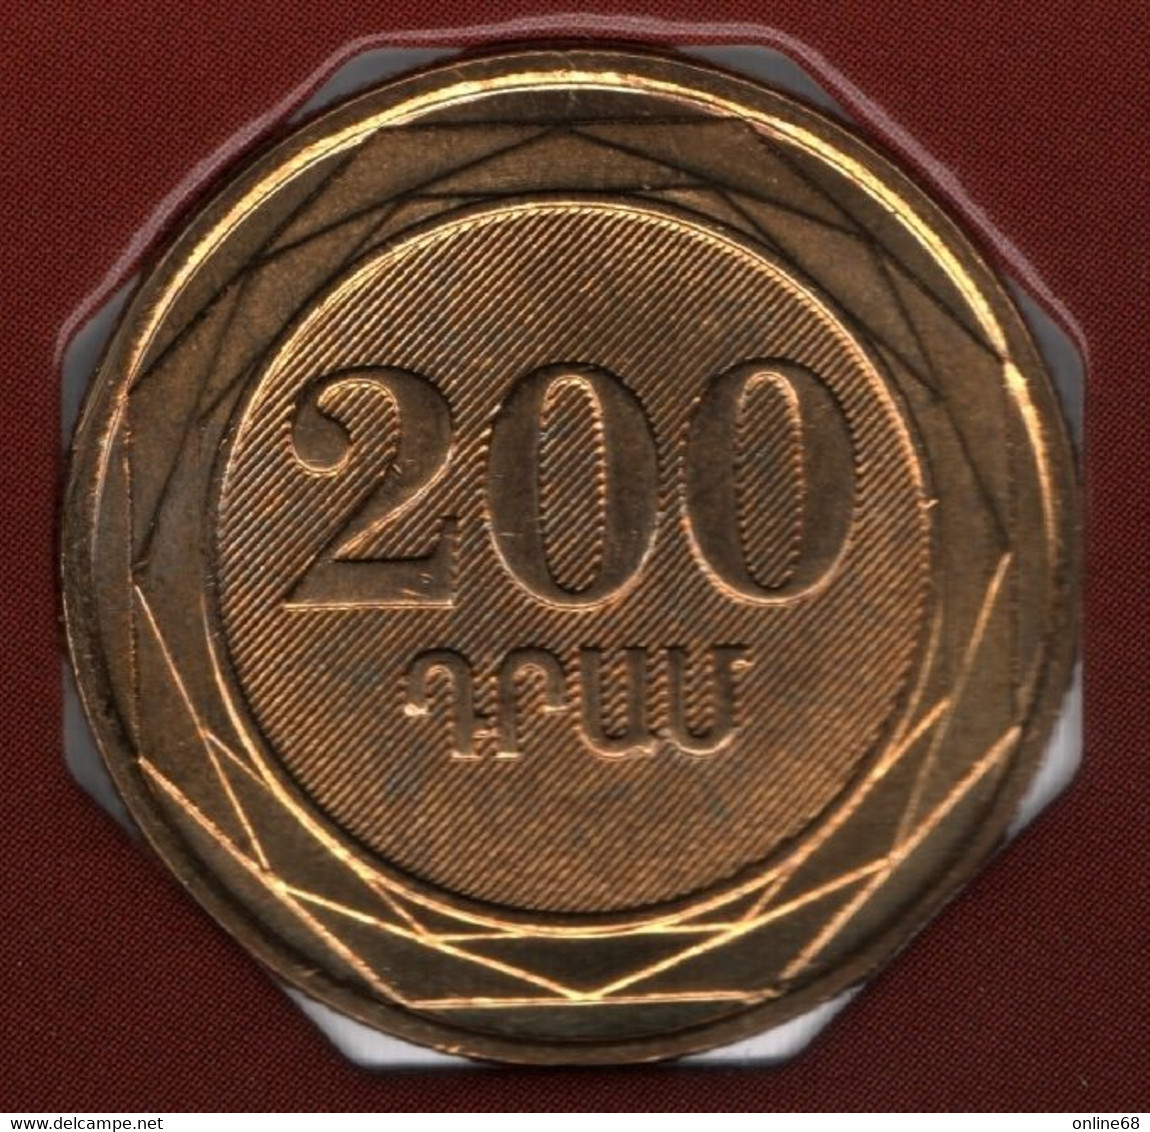 ARMENIA 200 DRAMS 2003 KM# 96 - Armenia